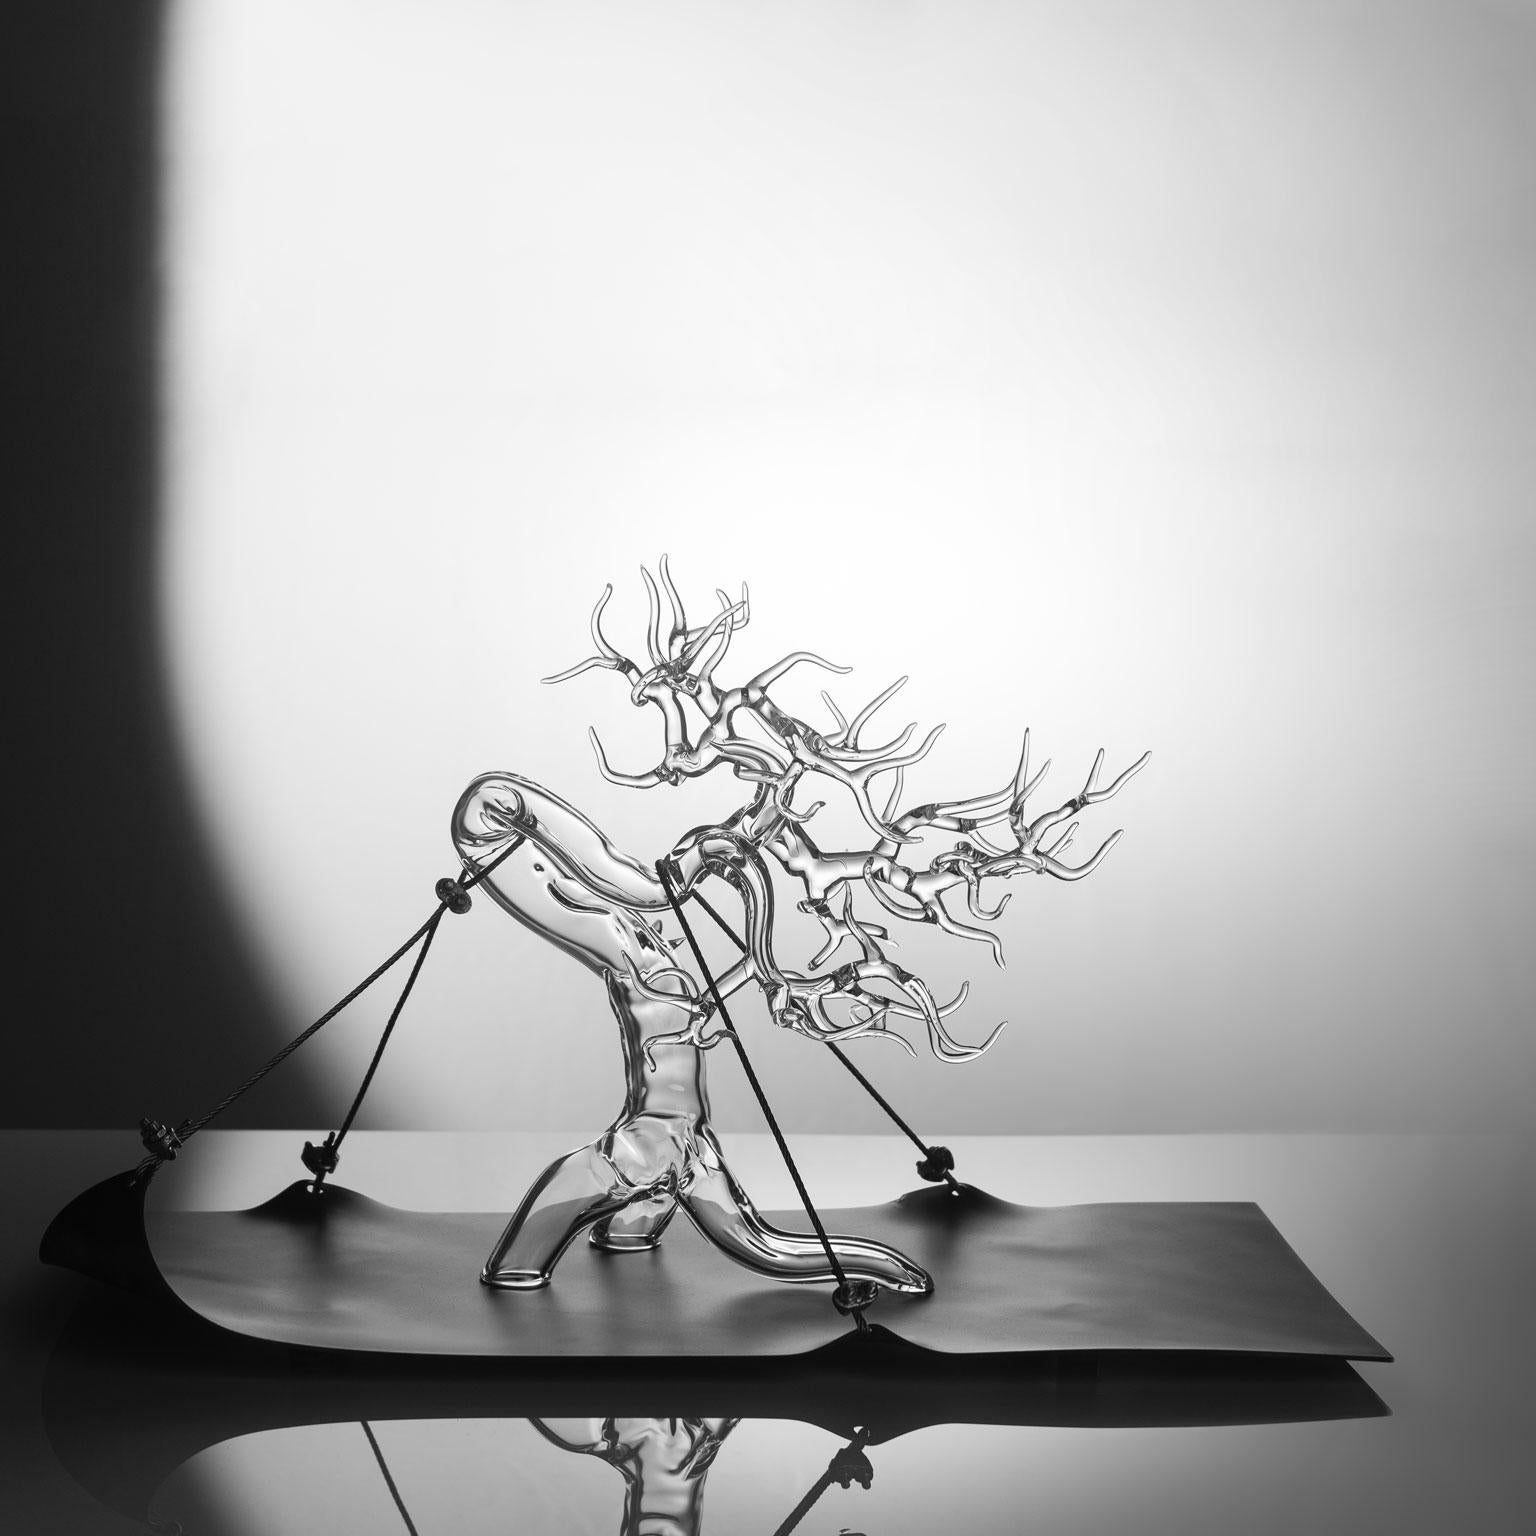 Tensione Esetica 2023 #01
Skulptur aus mundgeblasenem Glas von Simone Crestani.

